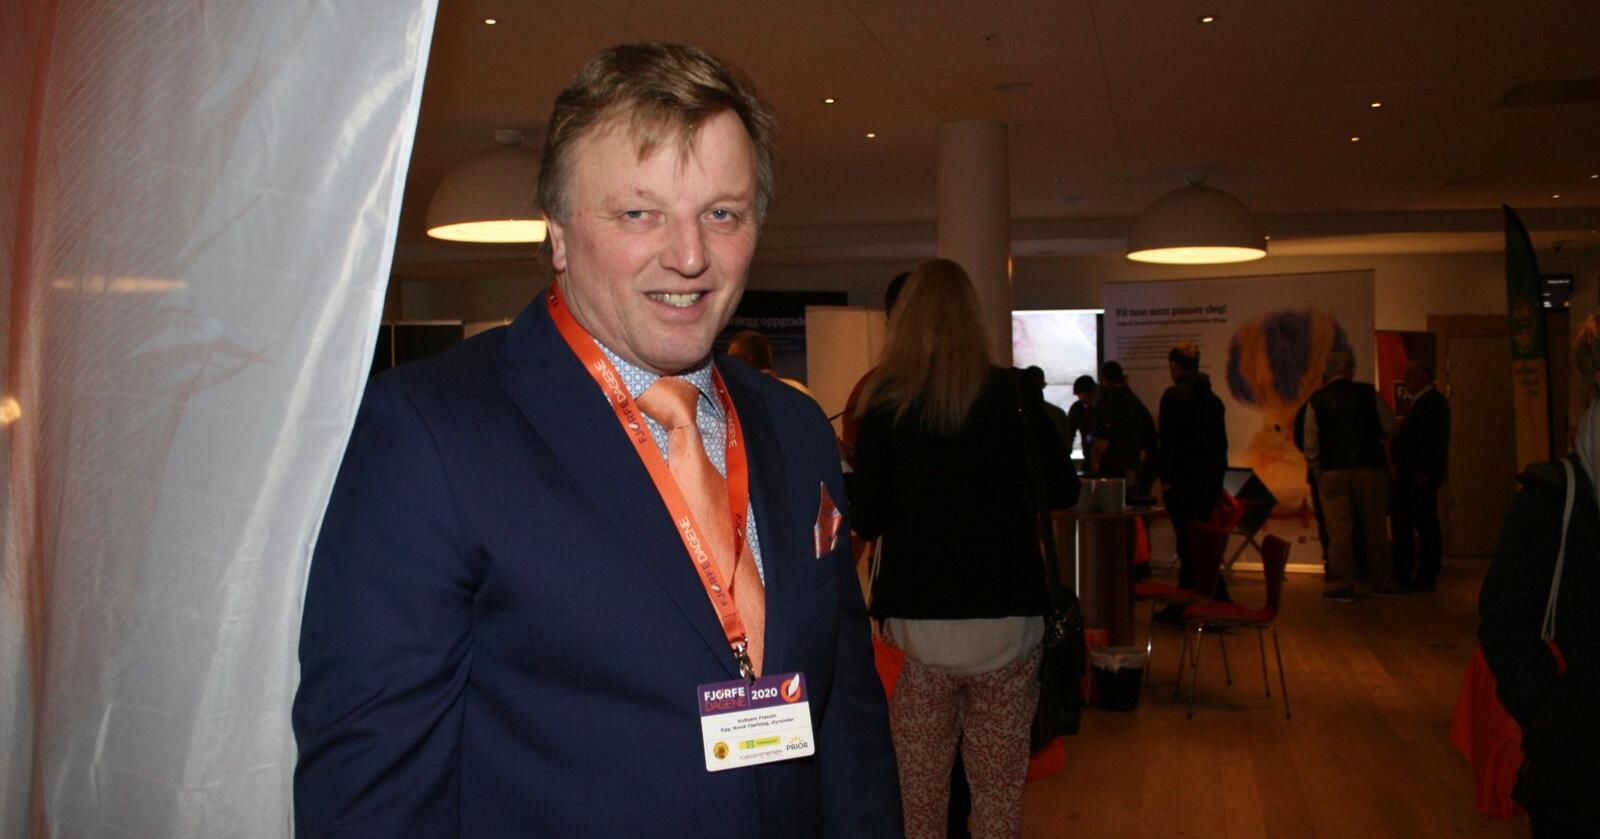 Styreleder i Norsk Fjørfelag, Kolbjørn Frøseth, får fornyet tillit. Foto: Bjarne Bekkeheien Aase
